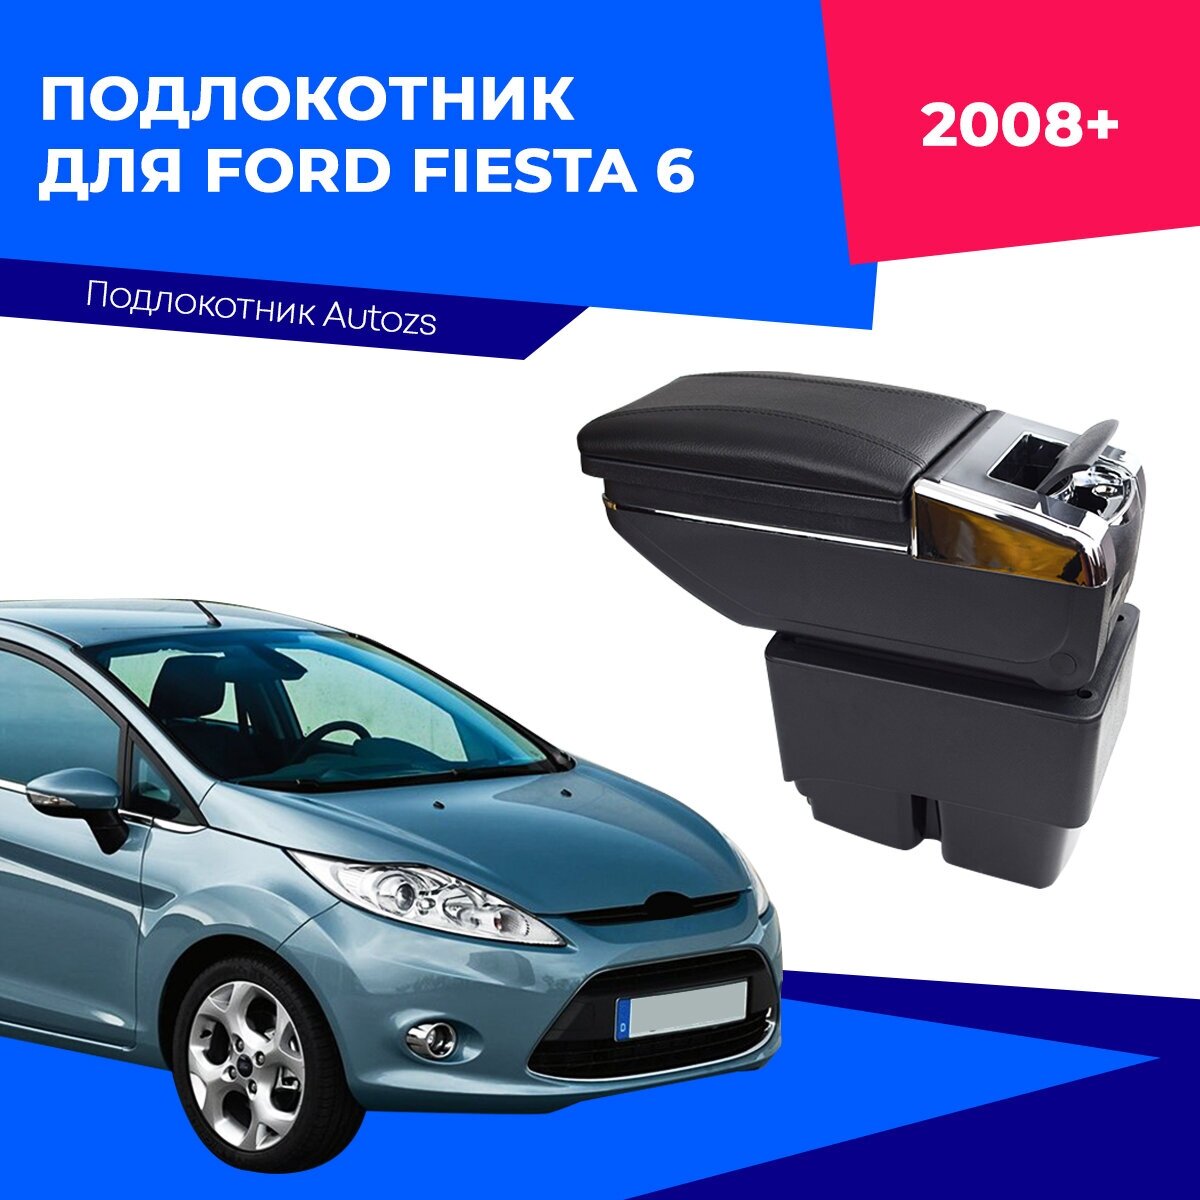 Подлокотник для Ford Fiesta 6 2008+ / Форд Фиеста 6 2008+ черный экокожа